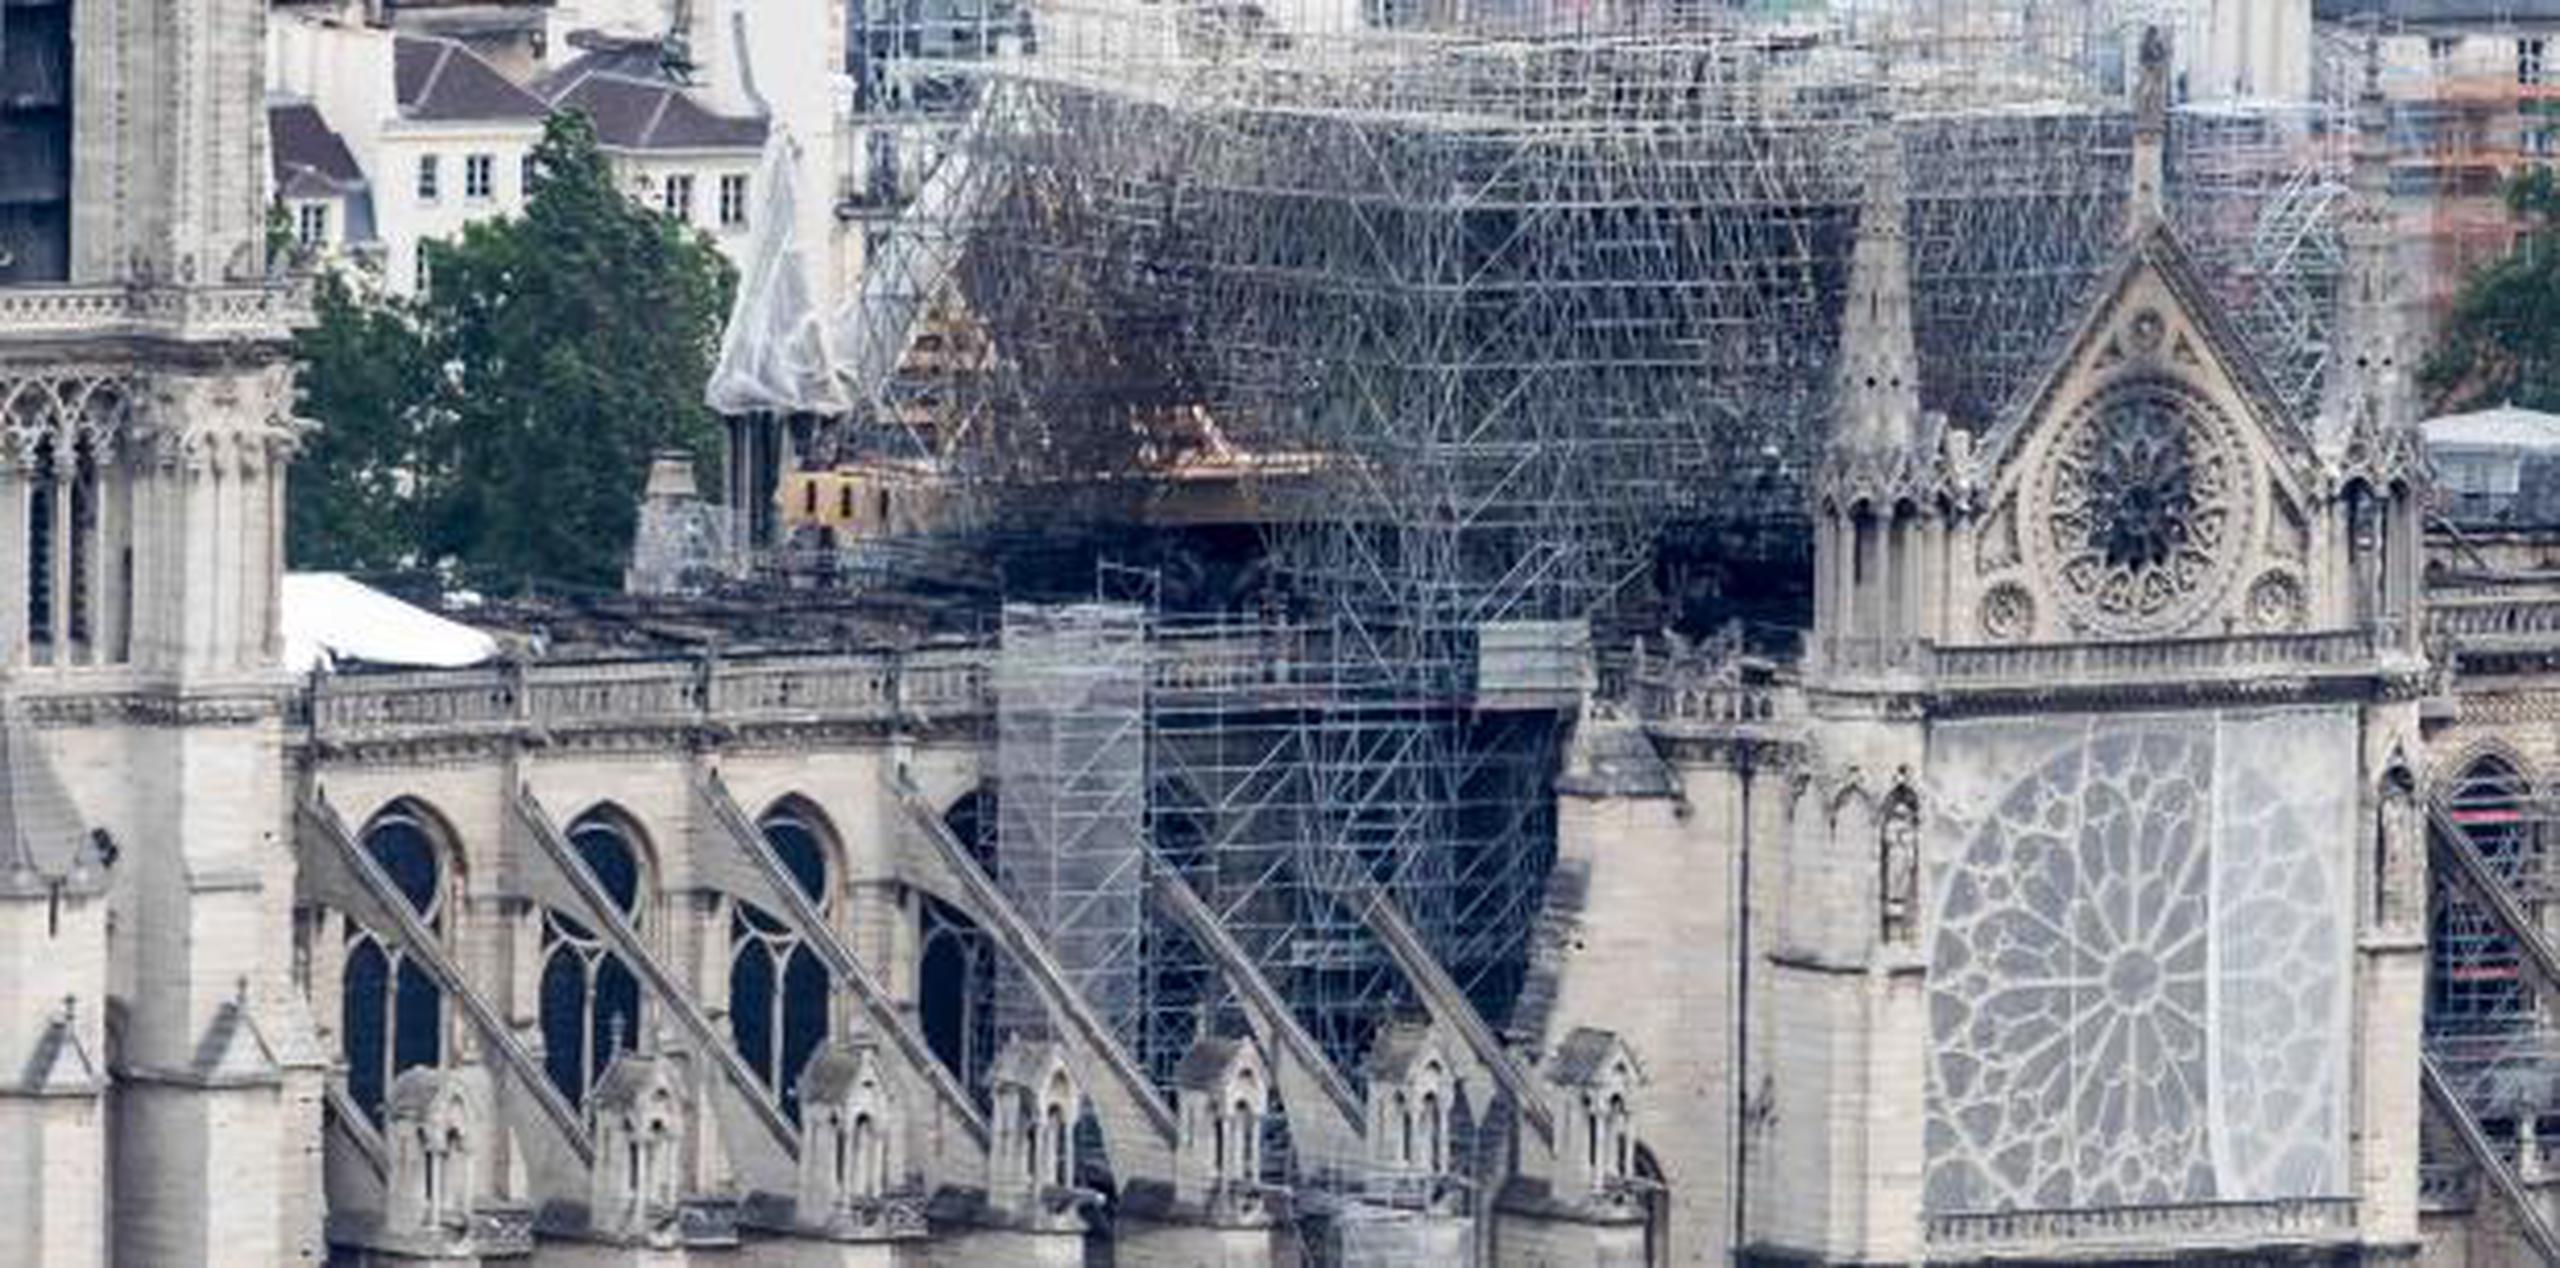 La asociación Amigos de Notre Dame de París calcula que el 90% de las donaciones recibidas provinieron de donantes estadounidenses. (EFE / Christophe Petit Tesson)